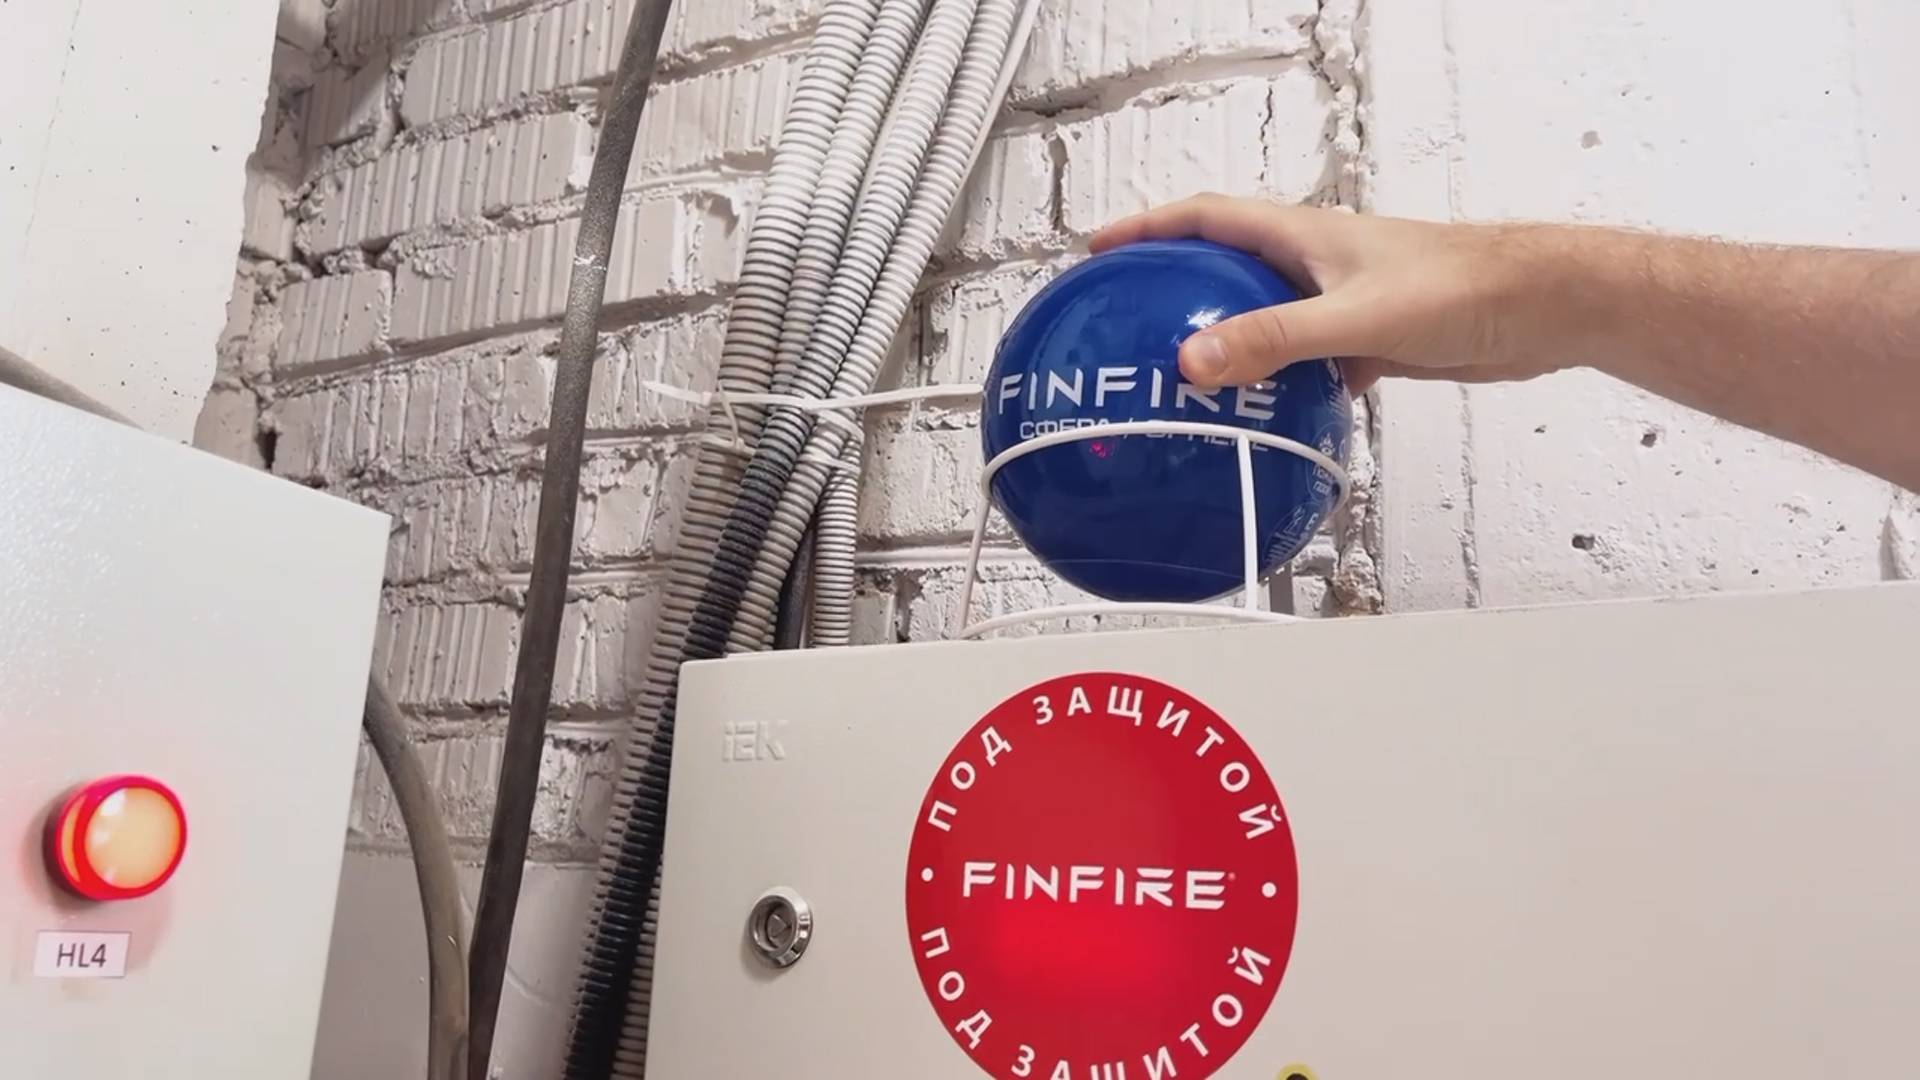 Установка FINFIRE СФЕРЫ в местах возможного возгорания